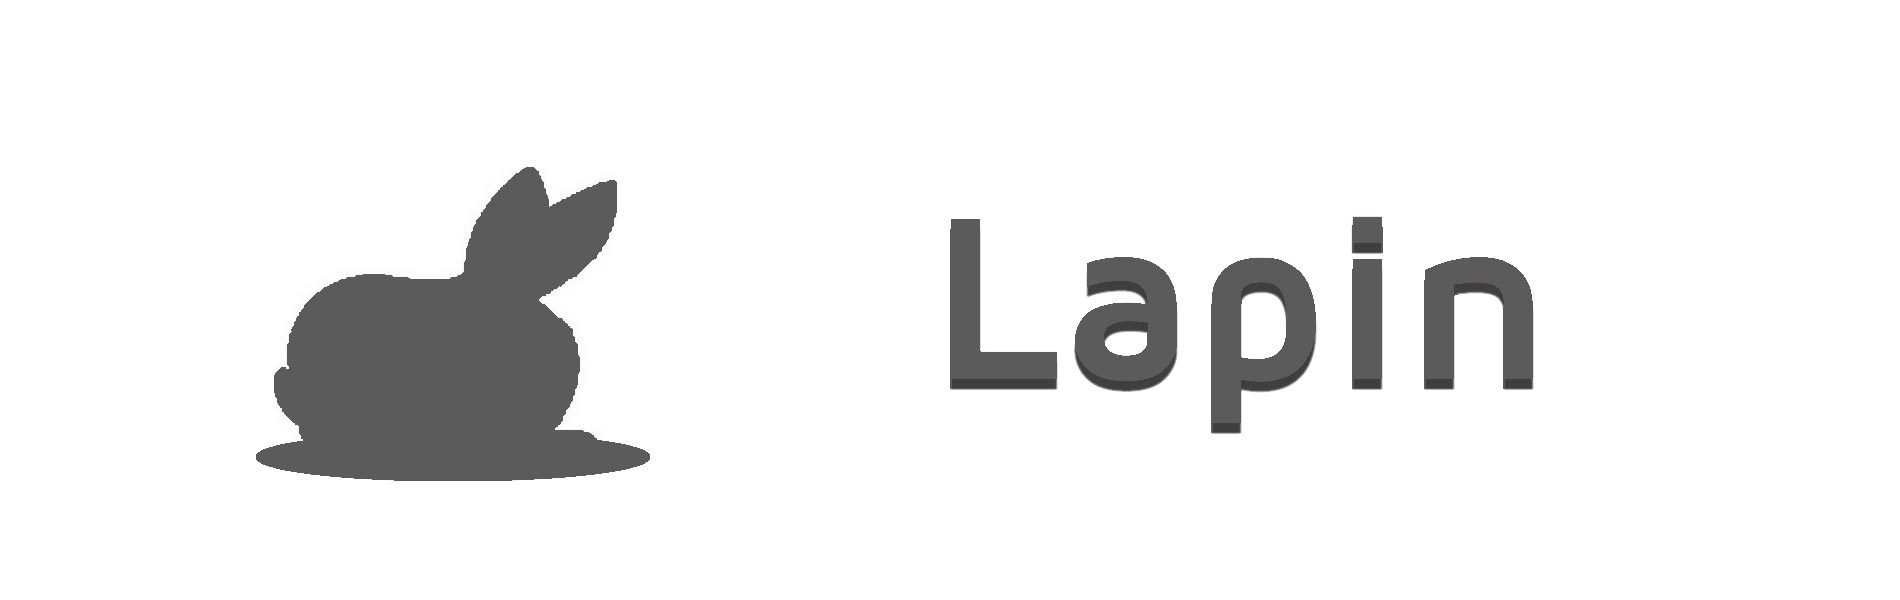 Lapin1